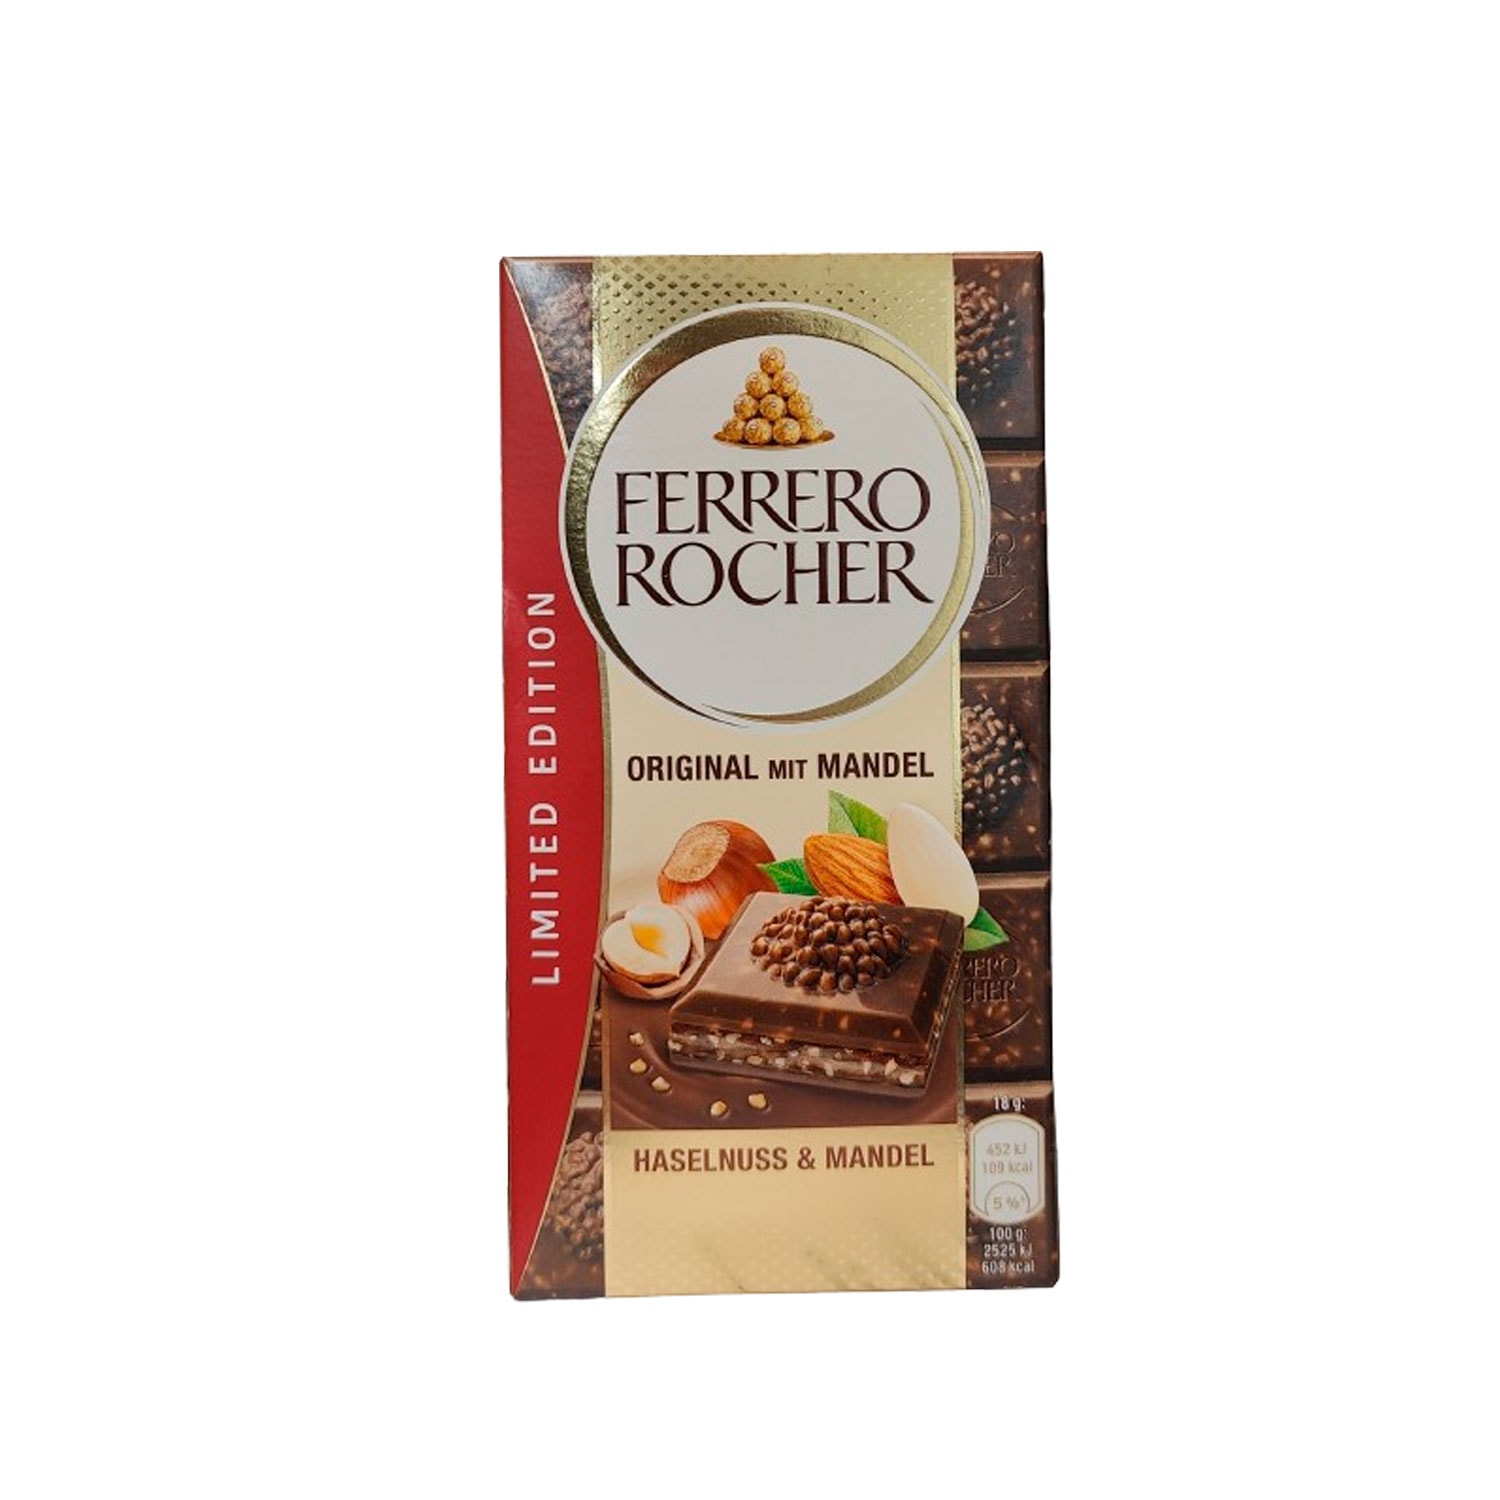 Fererro Rocher tableta de chocolate original con almendra